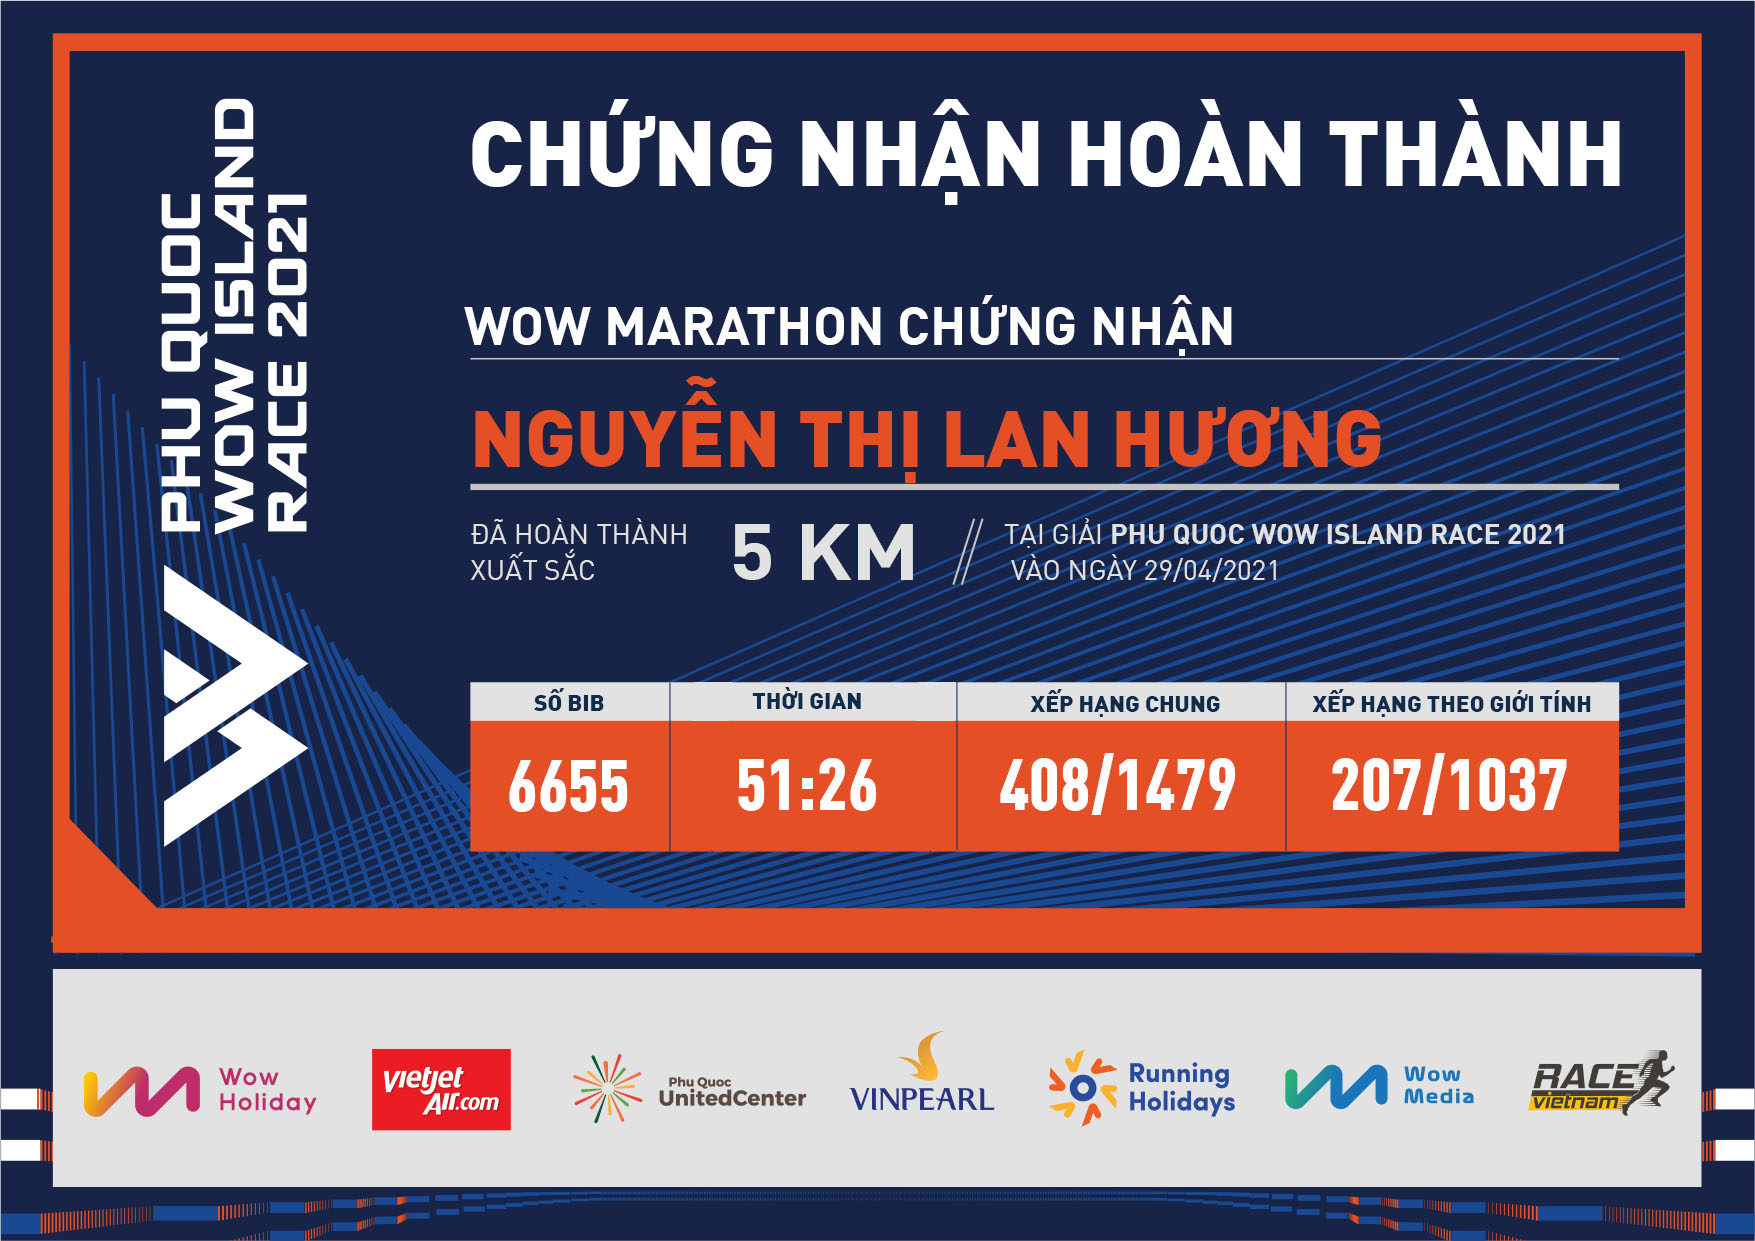 6655 - Nguyễn thị Lan Hương